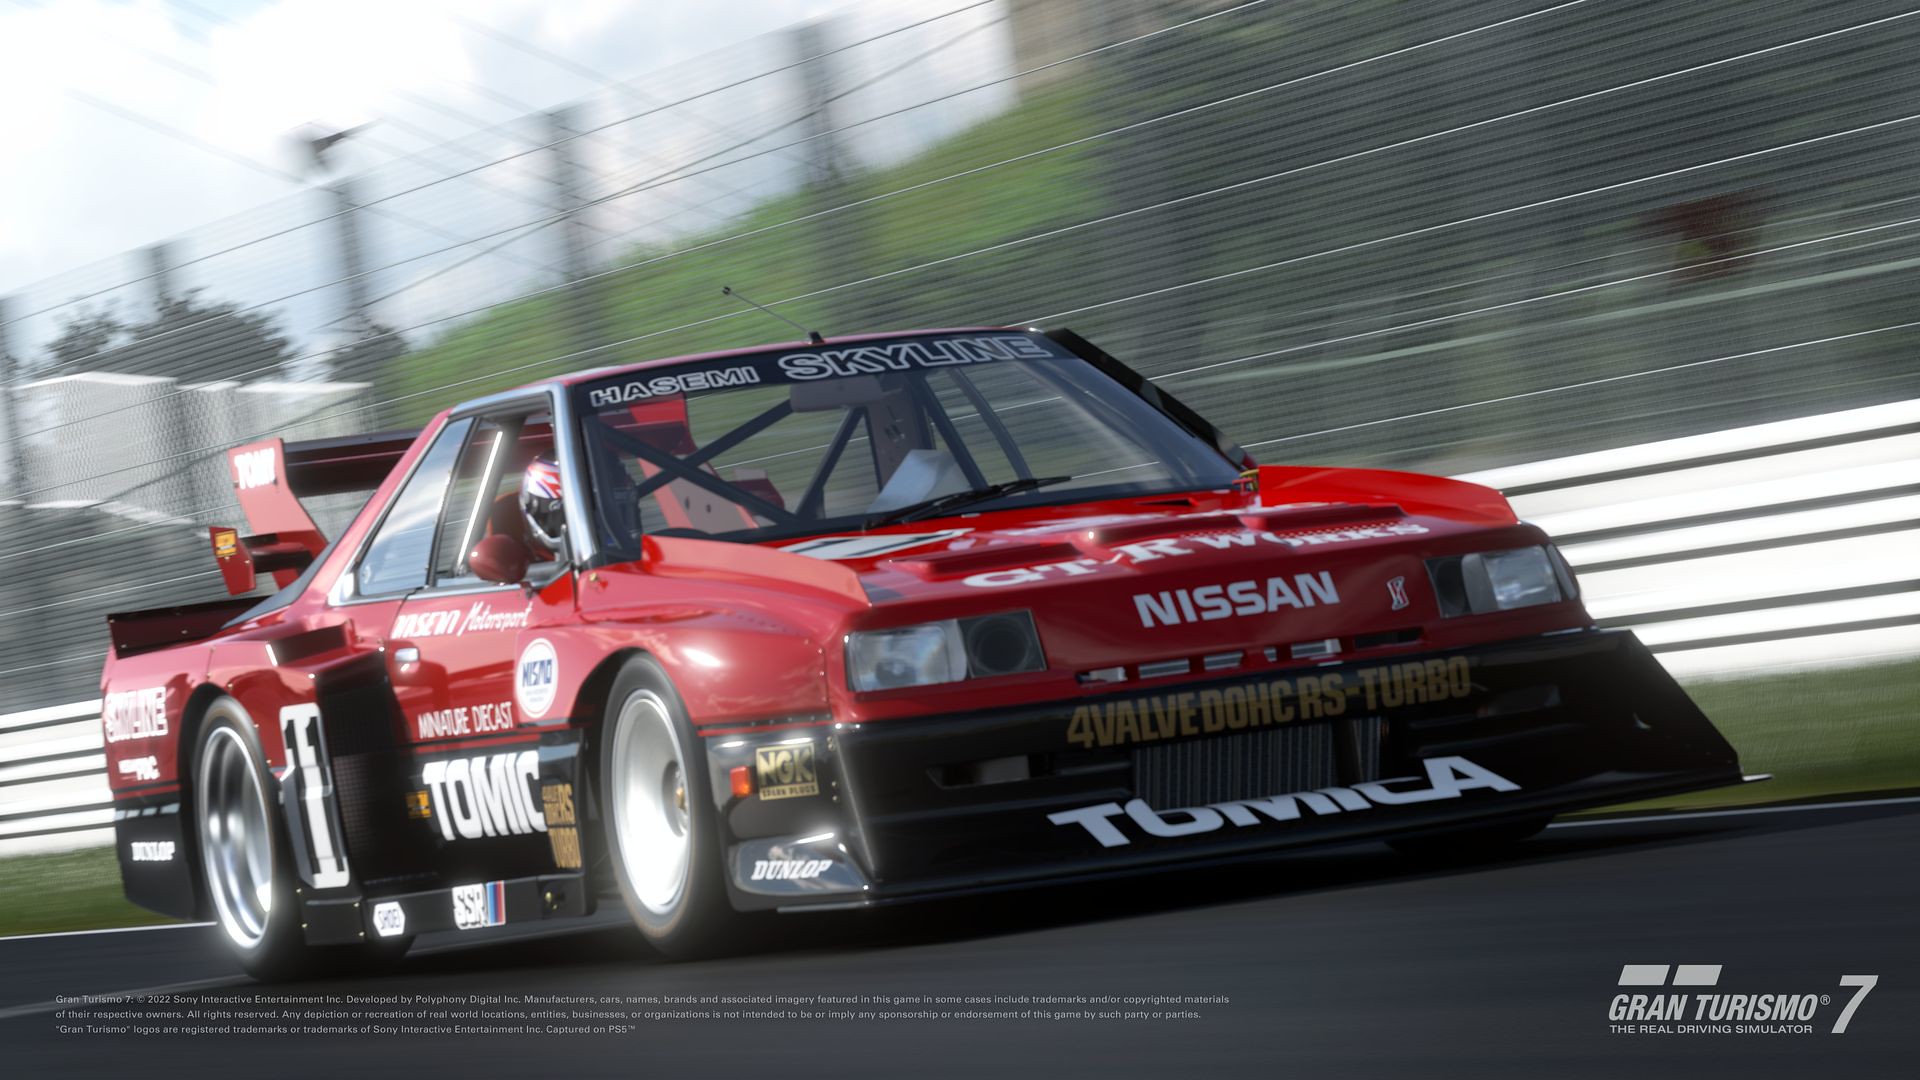 Bônus de pré-venda de Gran Turismo 7 são revelados com 3 carros